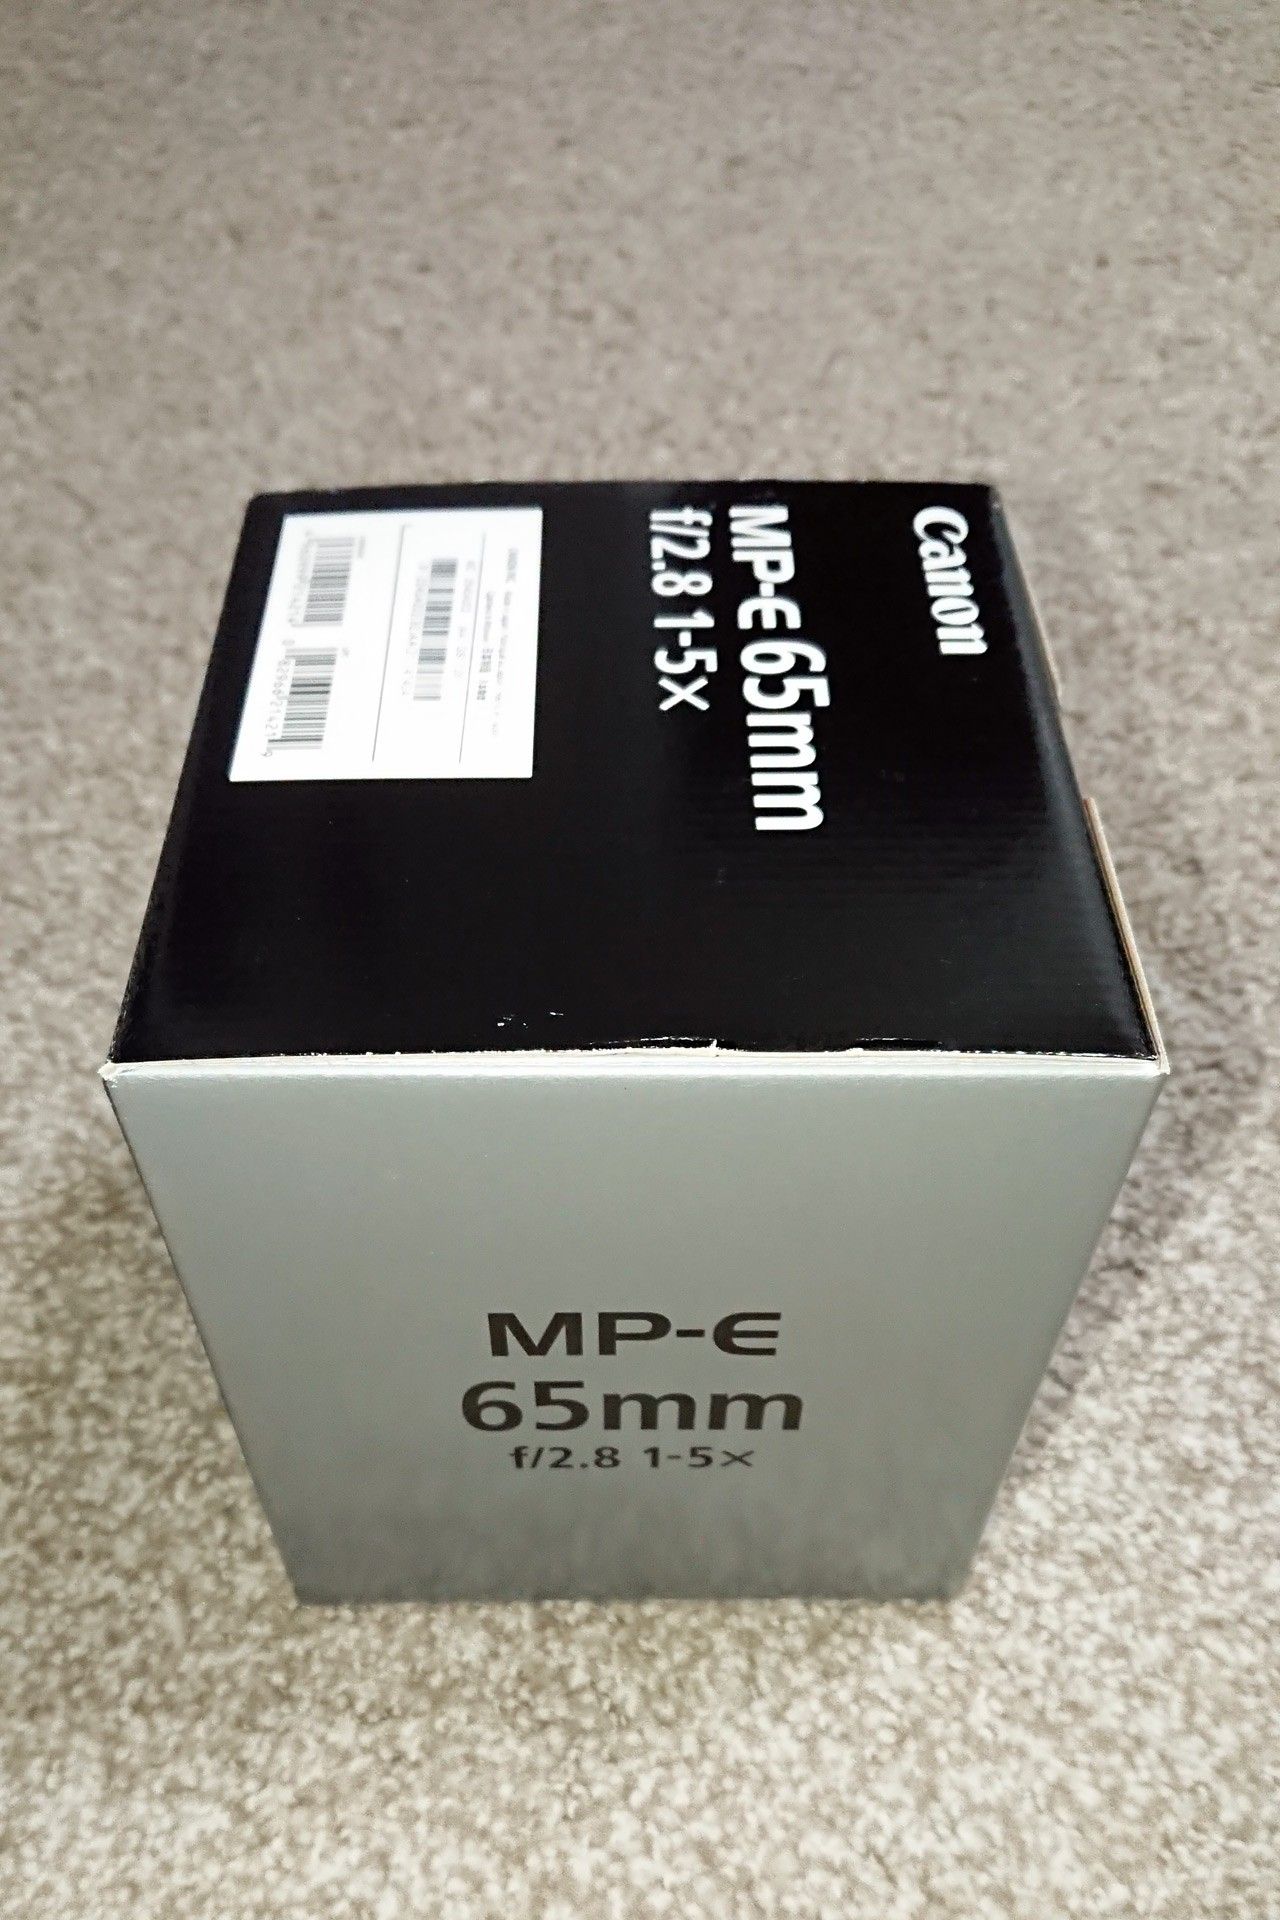 Canon MP-E65mm f/2.8 1-5x macro lens - BRAND NEW!!!